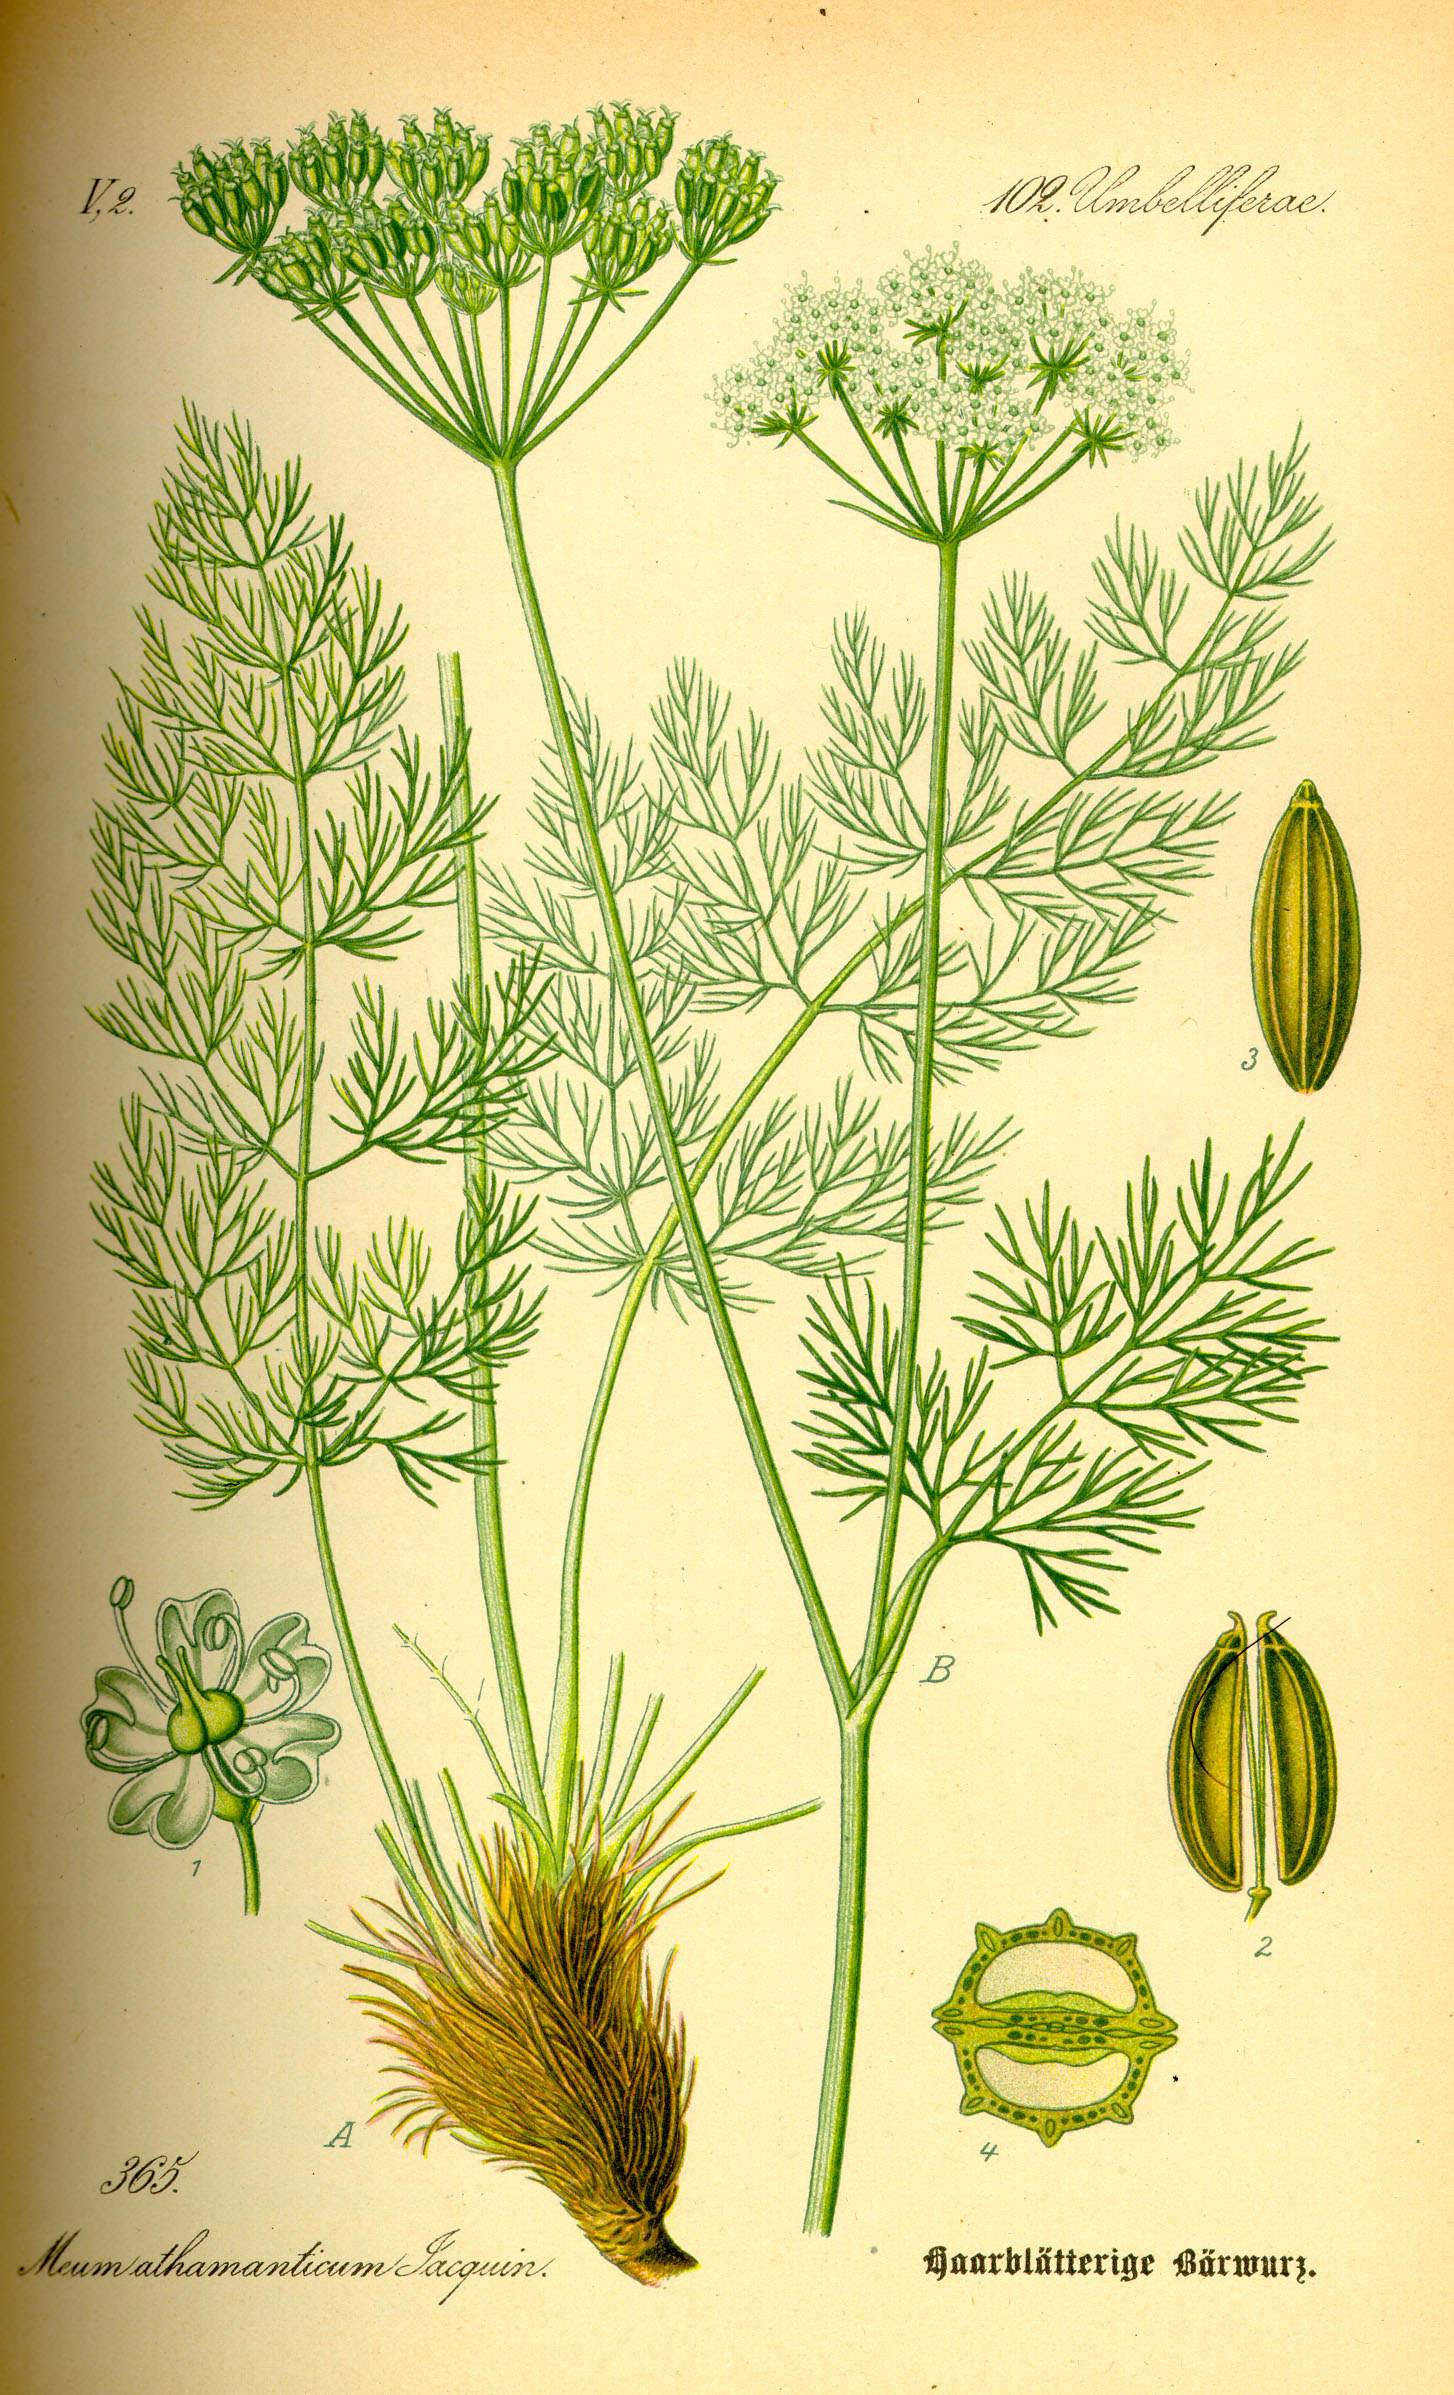 Bärwurz - Meum athamanticum - Zeichnung (Prof. Dr. Otto Wilhelm Thomé ''Flora von Deutschland, Österreich und der Schweiz'' 1885, Gera, Germany, http://www.biolib.de/thome/band3/tafel_049.jpg)